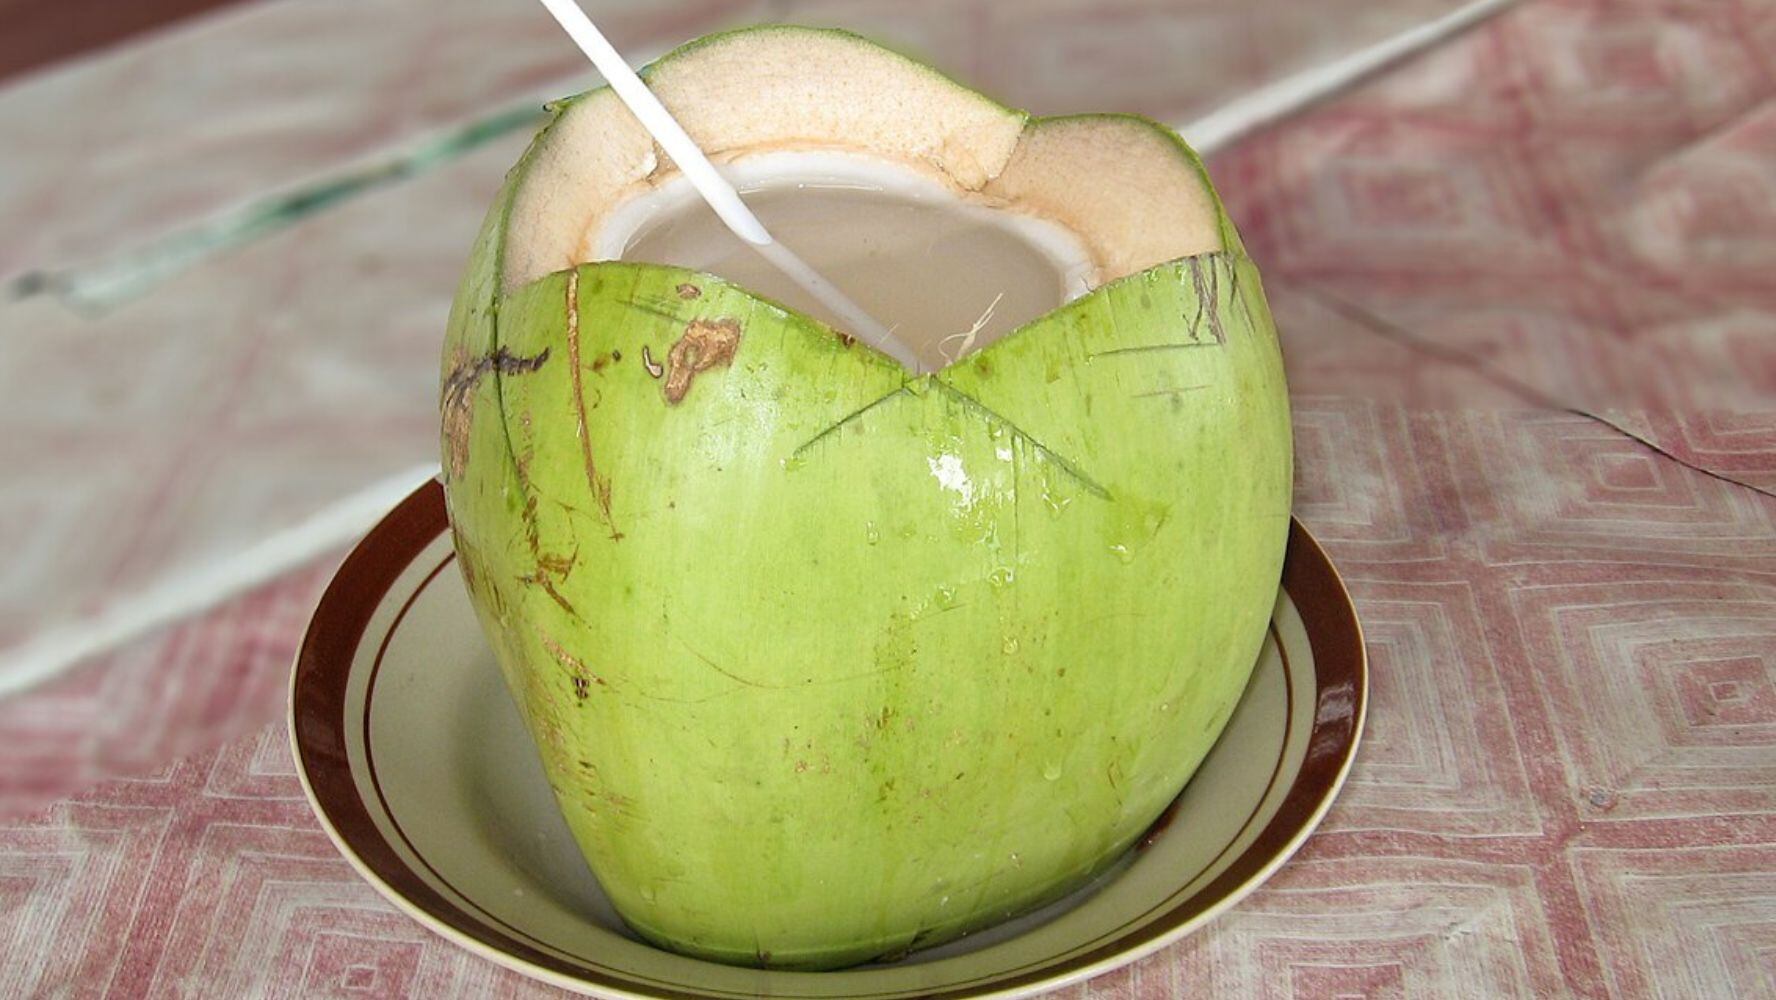 El agua de coco se obtiene de un fruto tropical. (Foto: Wikimedia Commons)